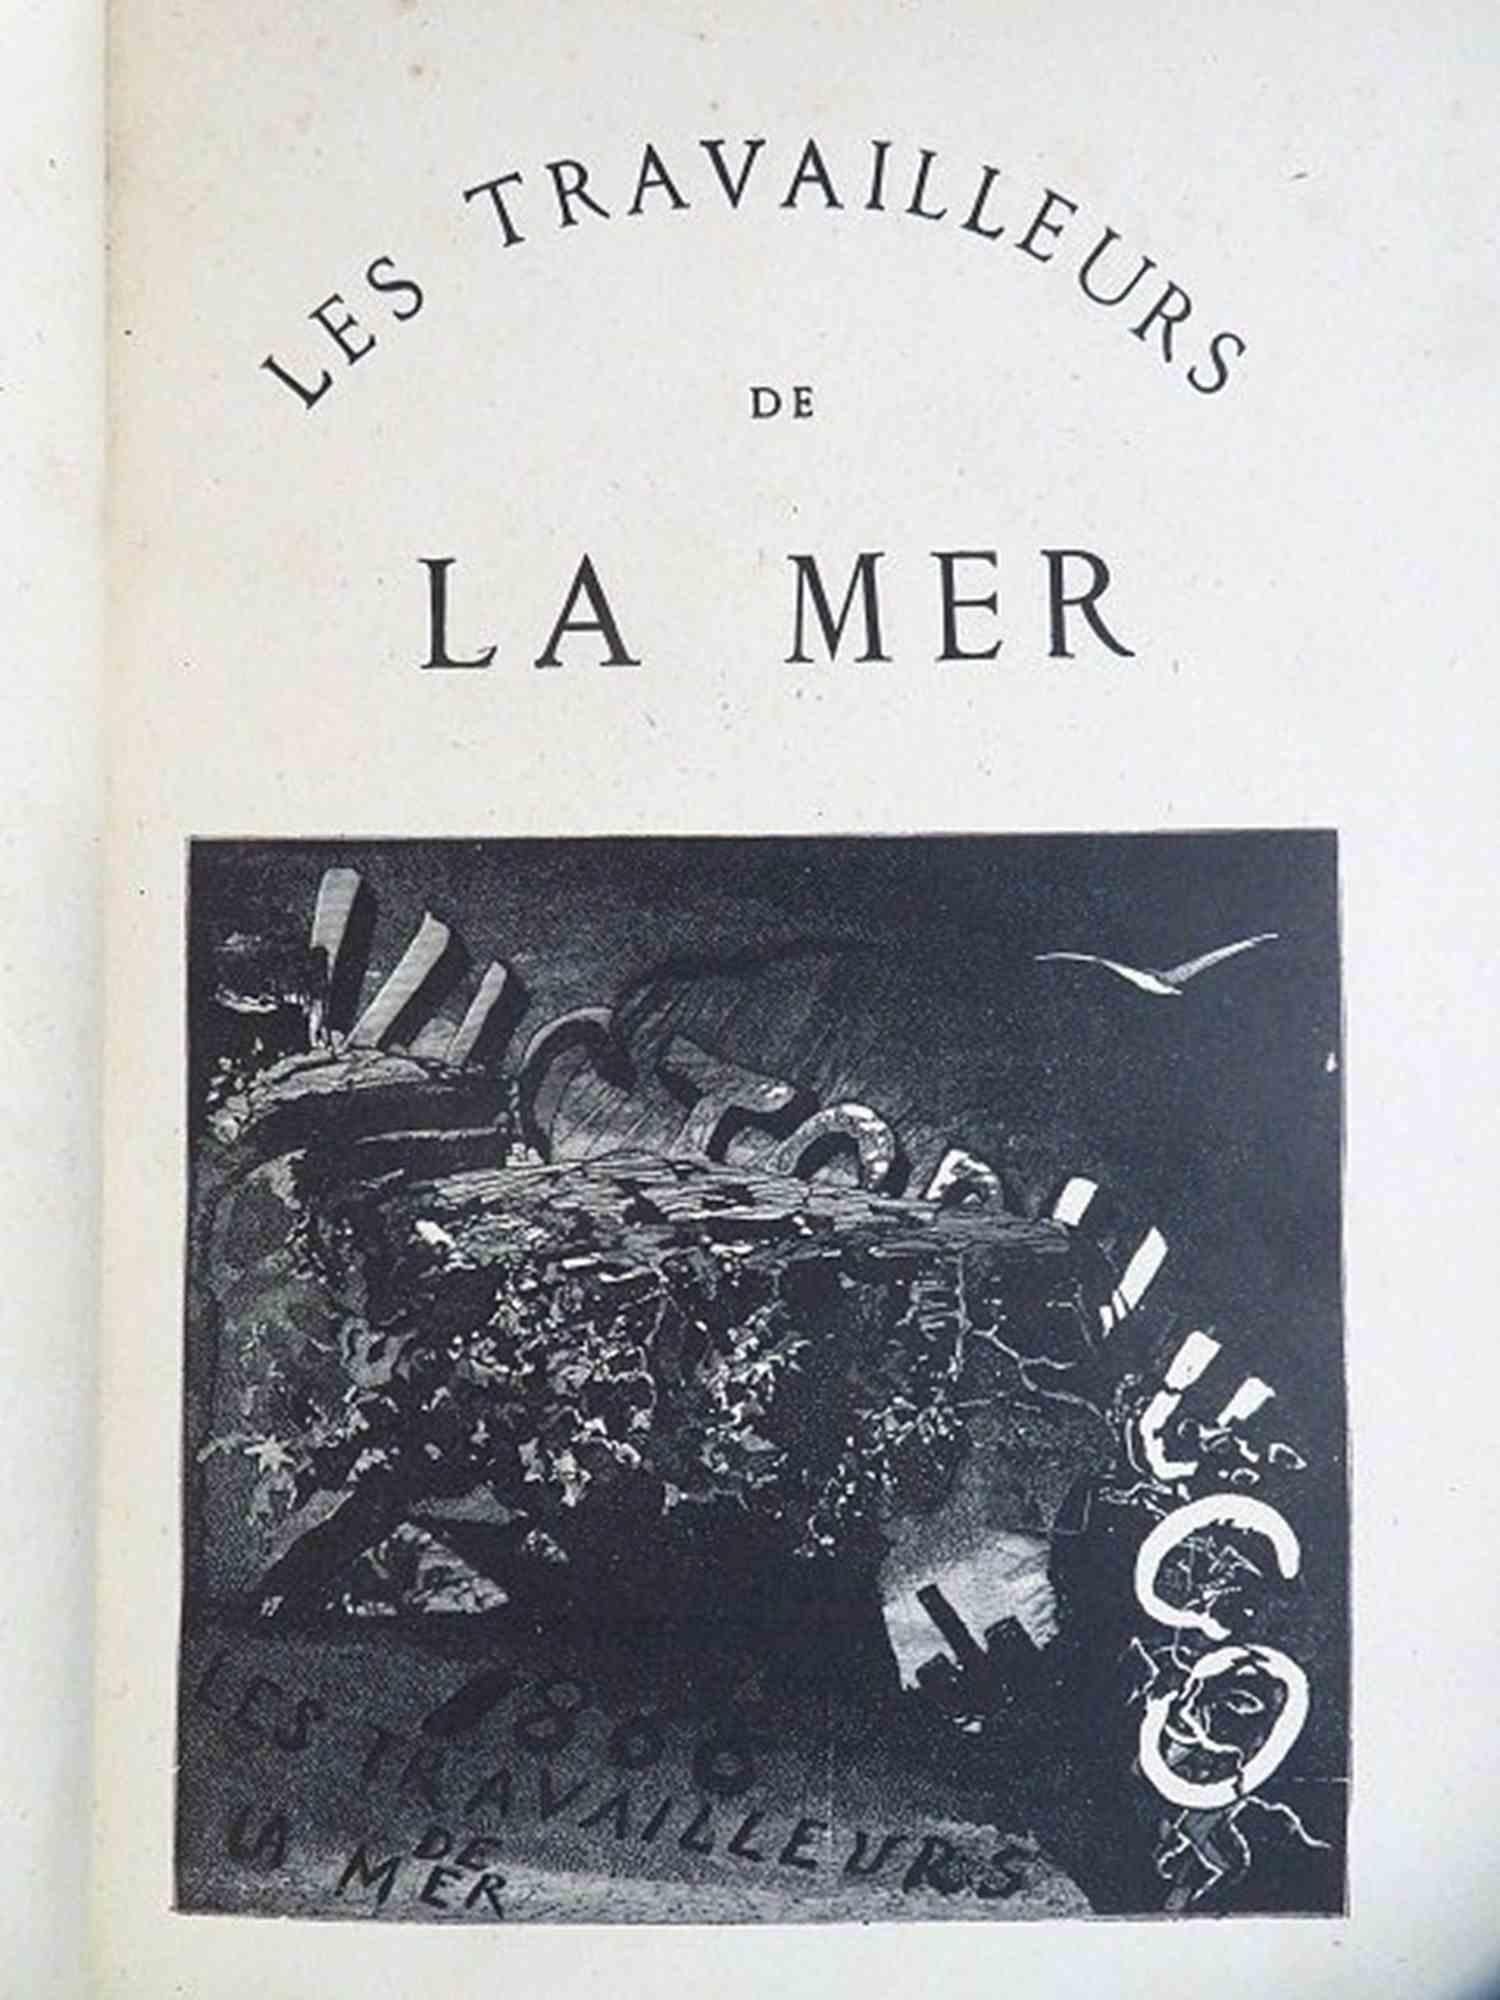 Les Travailleurs de la Mer ist ein seltenes Buch von Victor Hugo aus dem Jahr 1866.

Herausgegeben von Quantin - Paris. 

Illustrierte Originalausgabe "De luxe". "Tirage de tête" von 50 nummerierten Exemplaren auf "velin teinté" (dies ist n°32) in